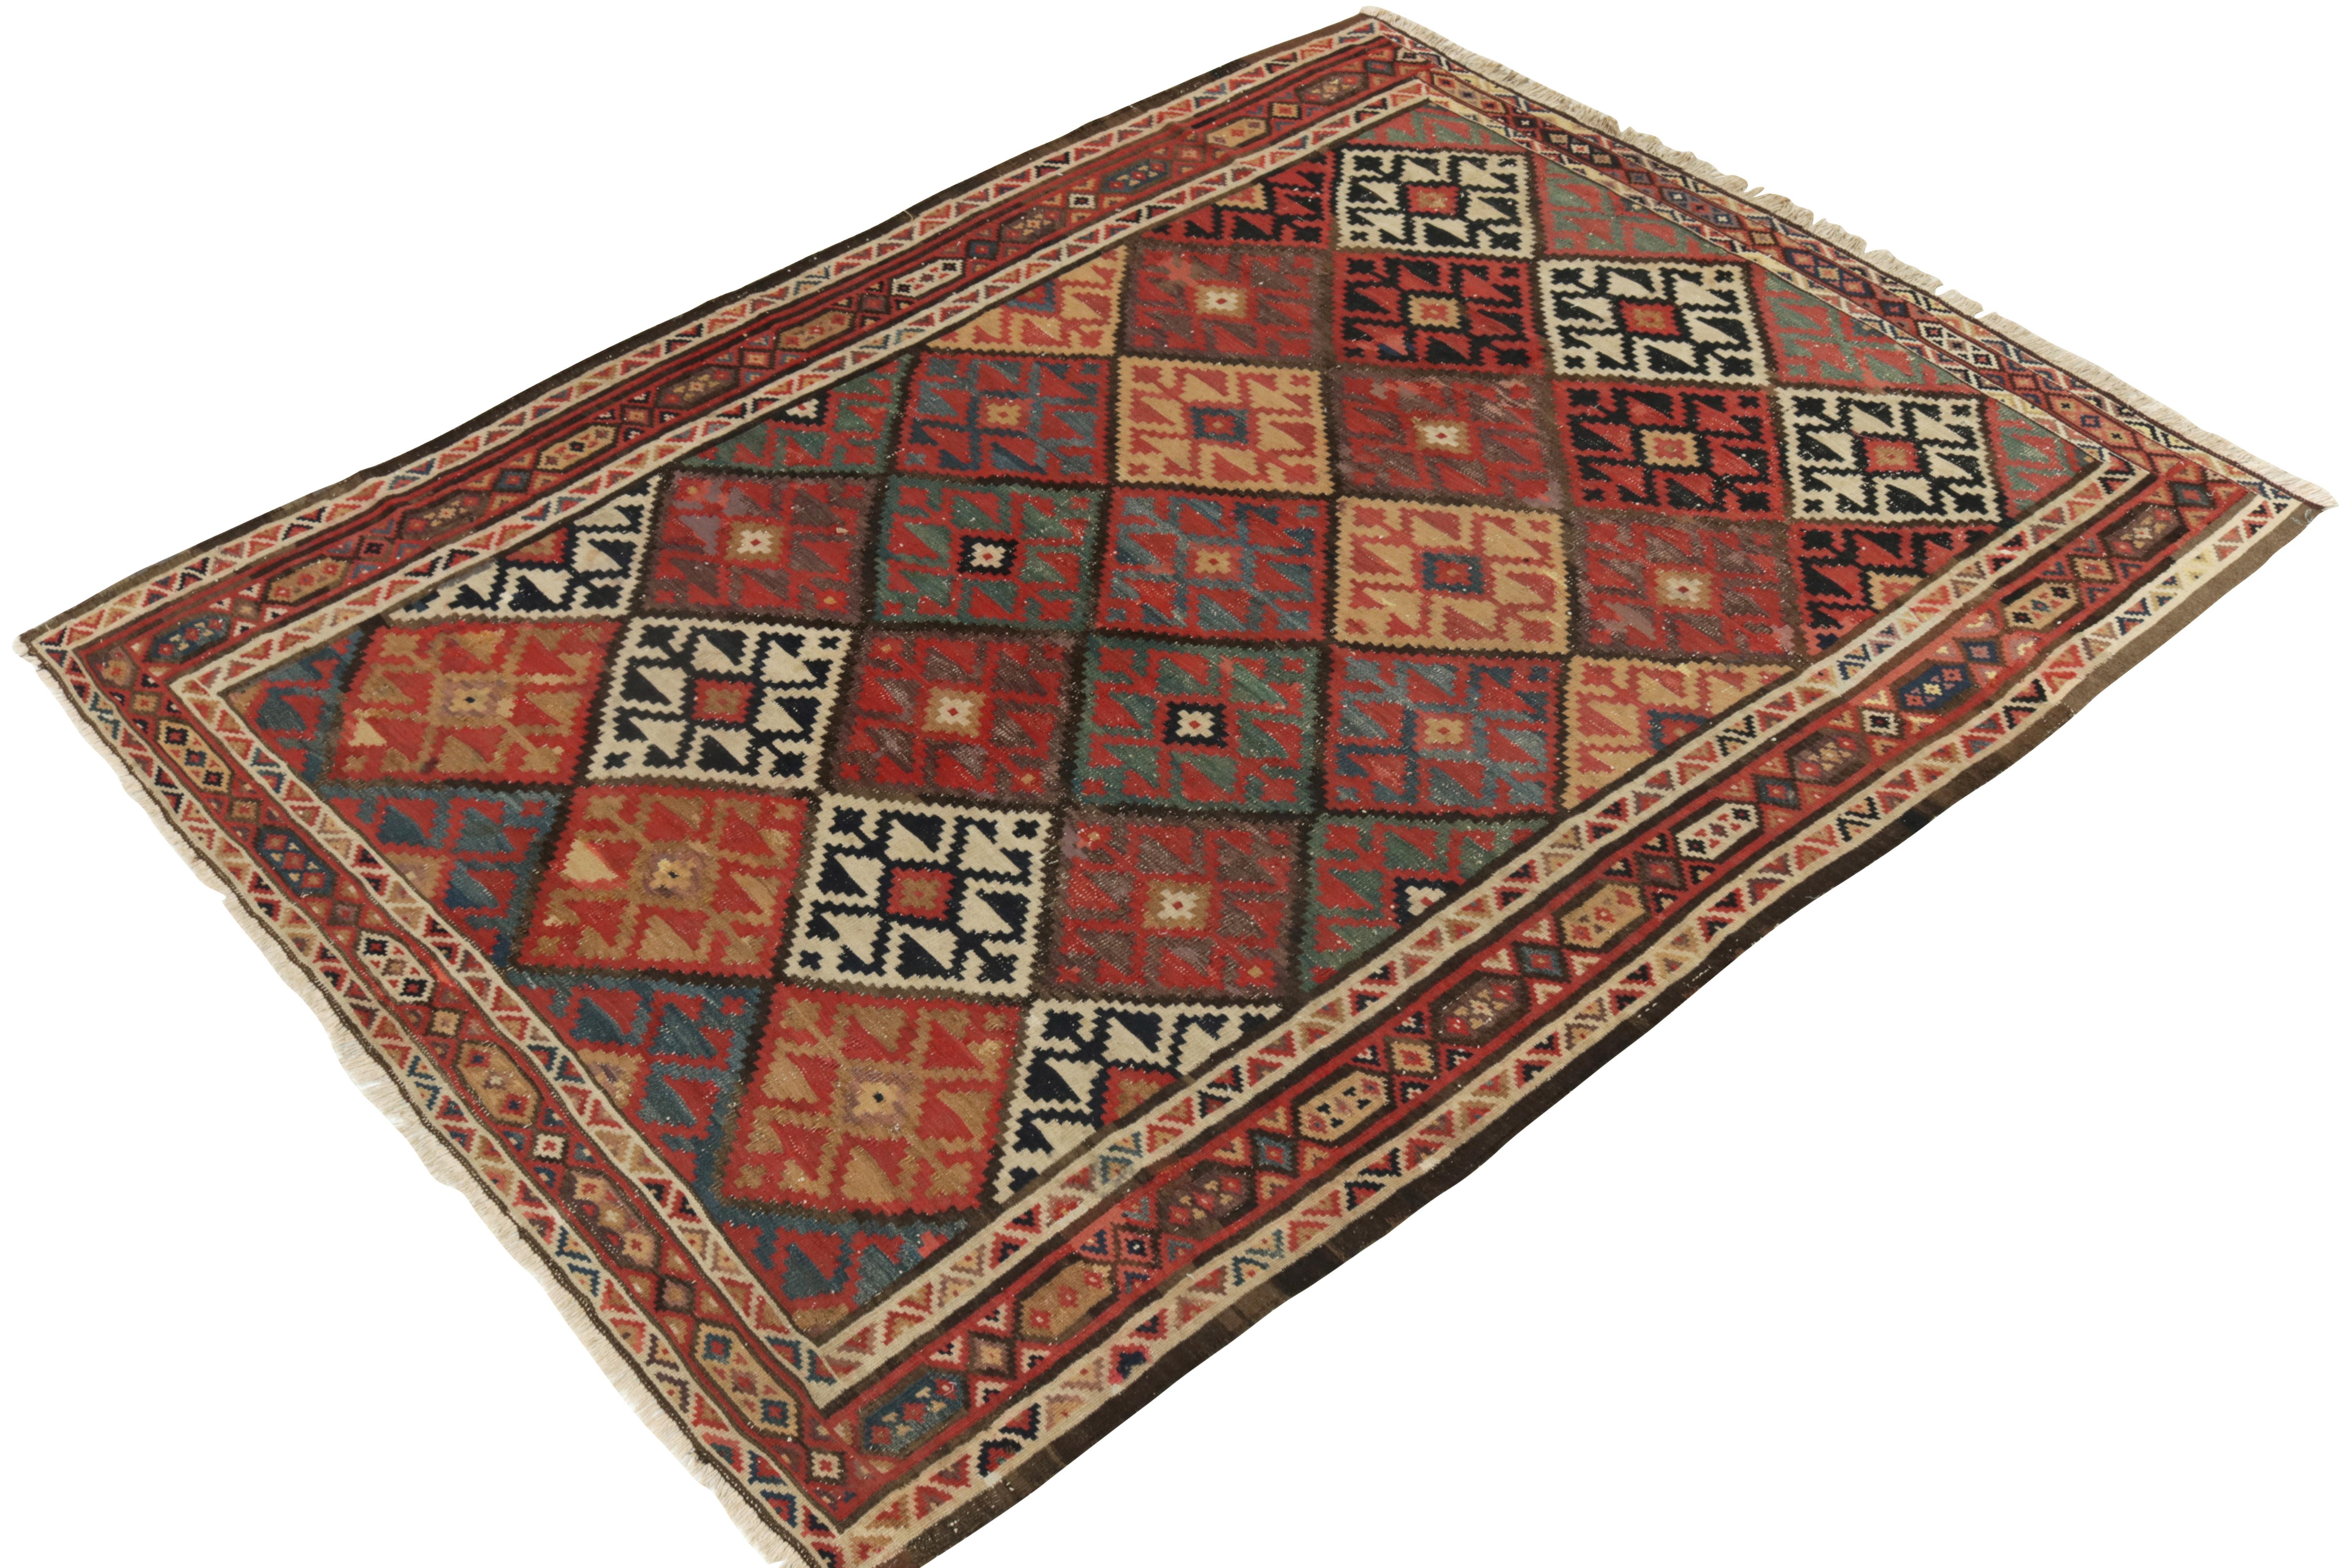 Mid-Century Modern Handwoven Vintage Persian Kilim Rug in Red, Beige-Brown Geometric Pattern